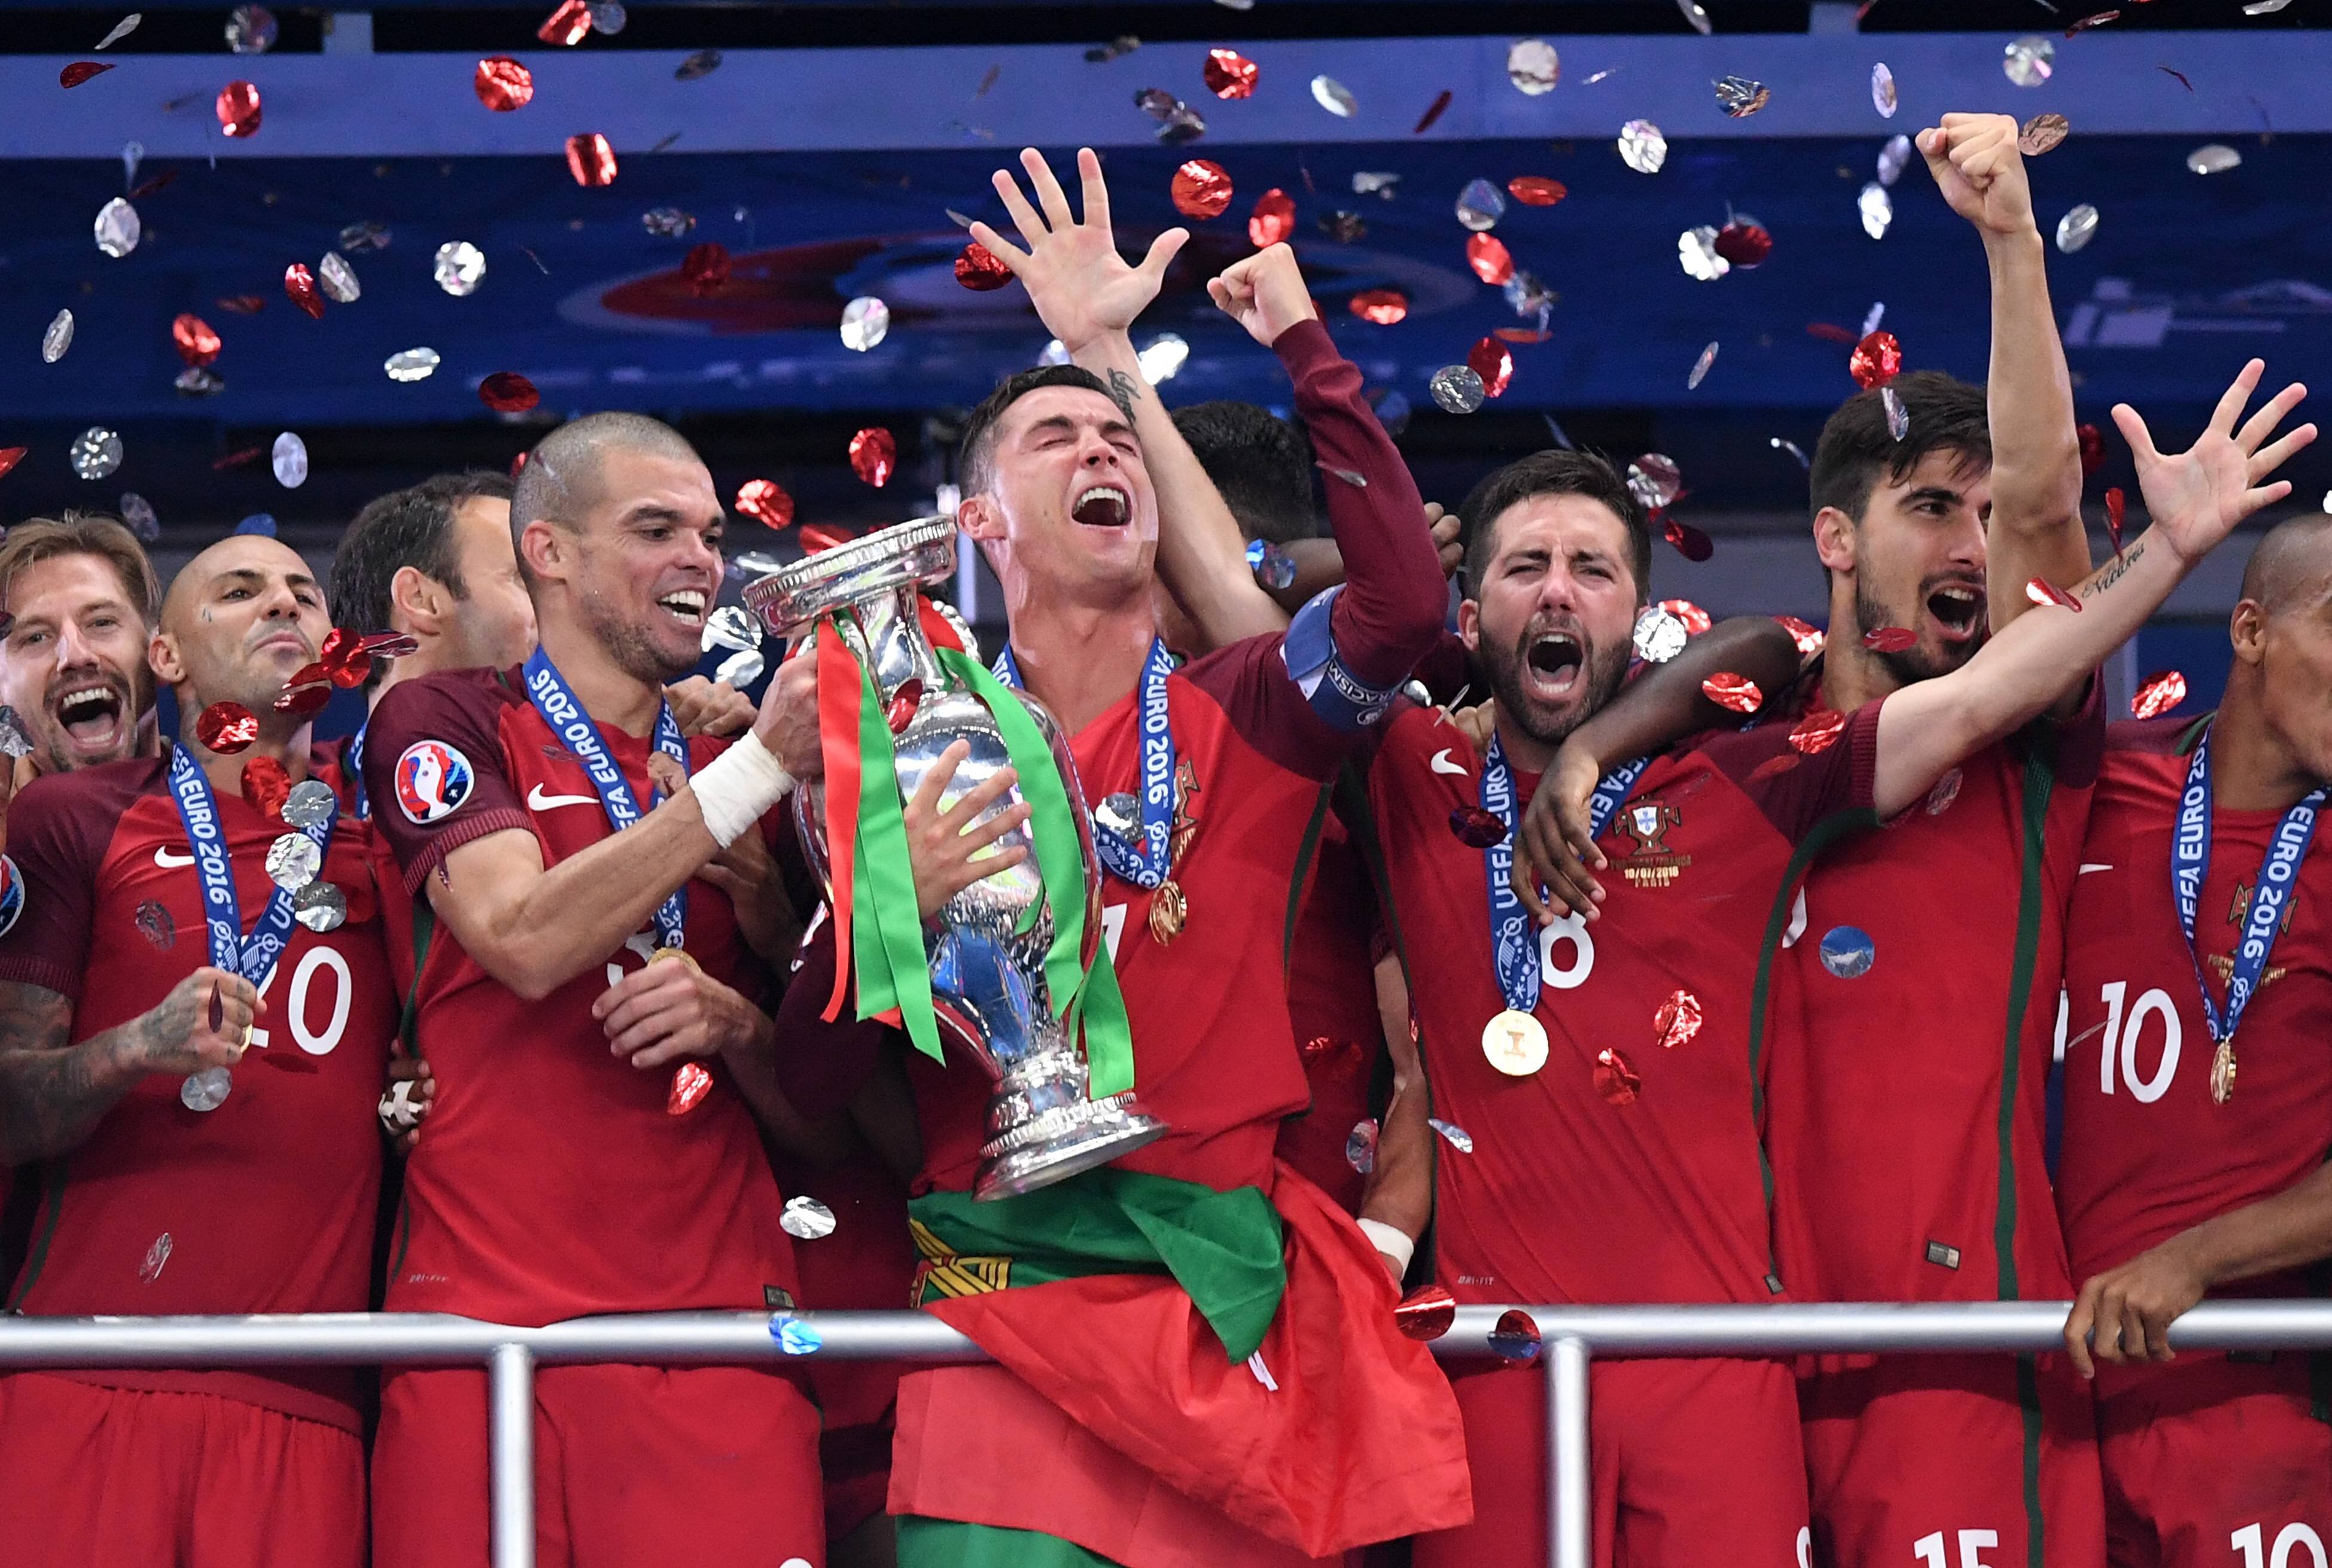 Сбылась мечта Криштиану Роналду: португалец выиграл турнир с национальной сборной. Португалия &mdash; чемпион Европы 2016 года.